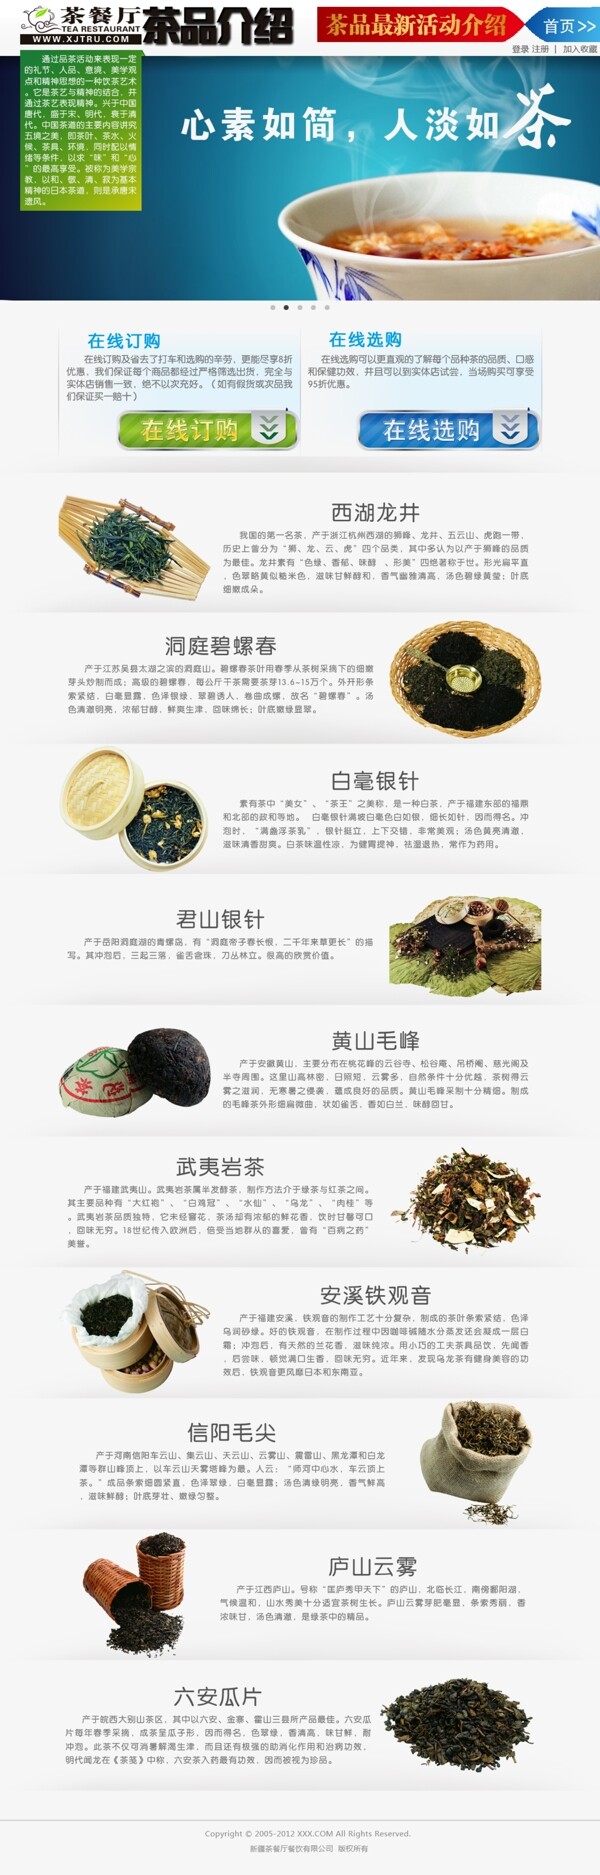 茶企产品展示页面图片